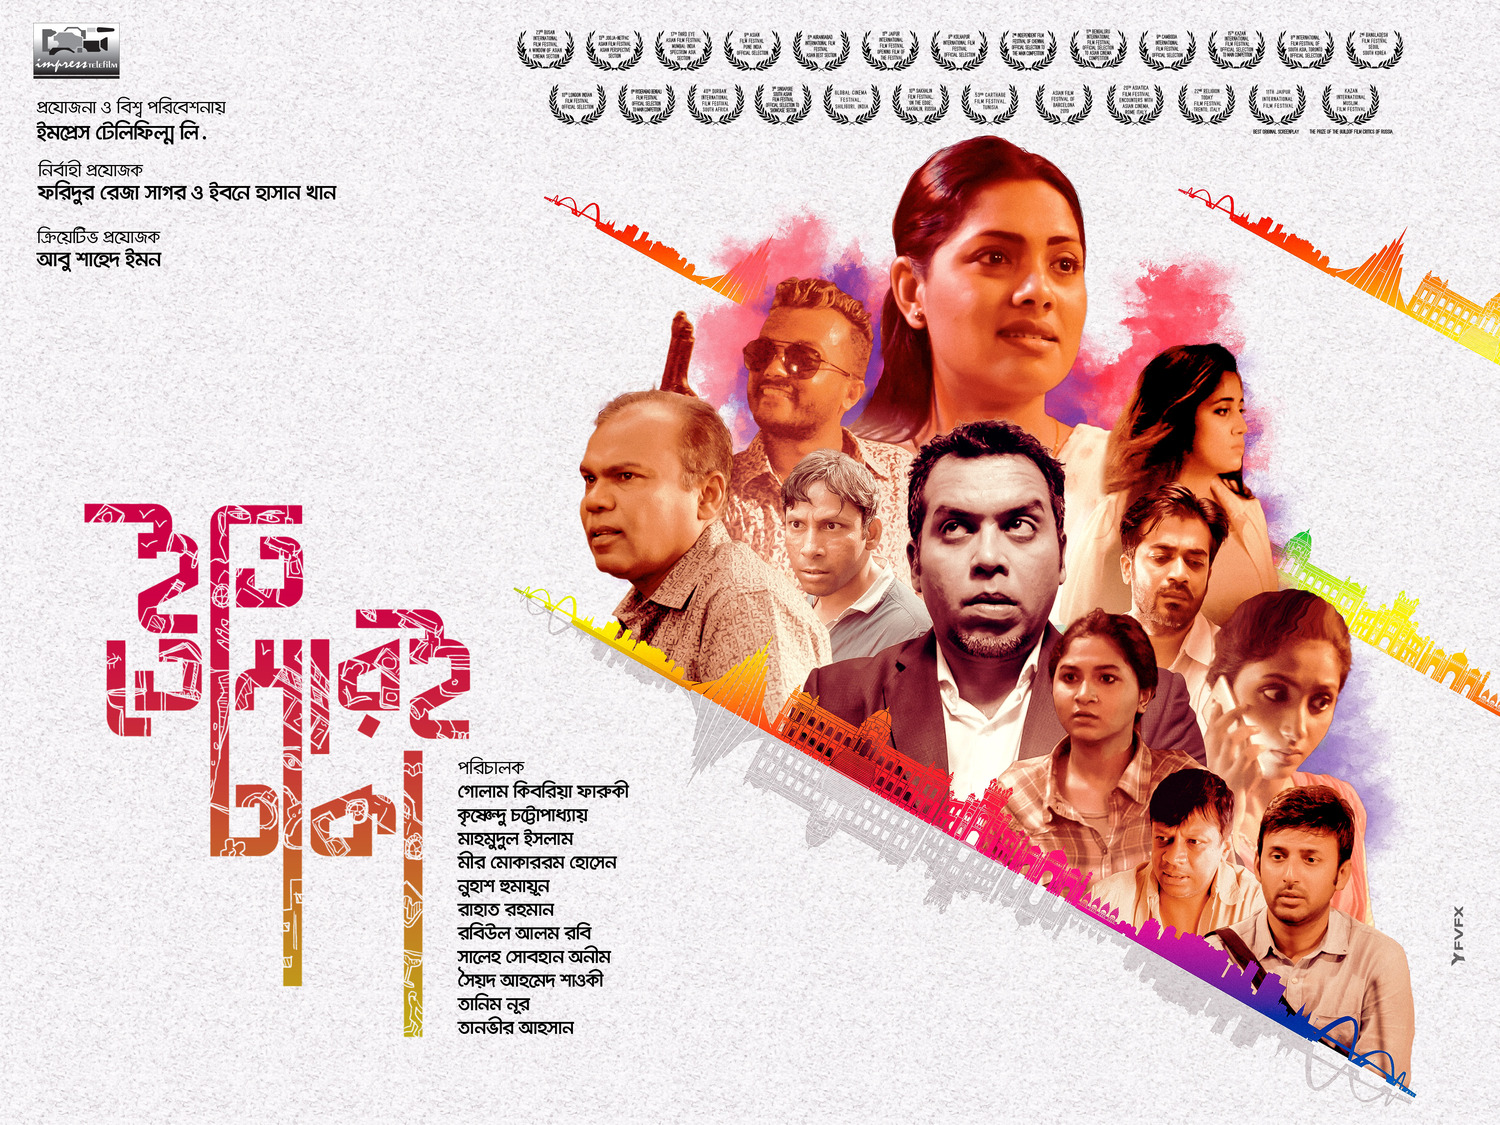 Extra Large Movie Poster Image for Iti, Tomari Dhaka (#4 of 8)